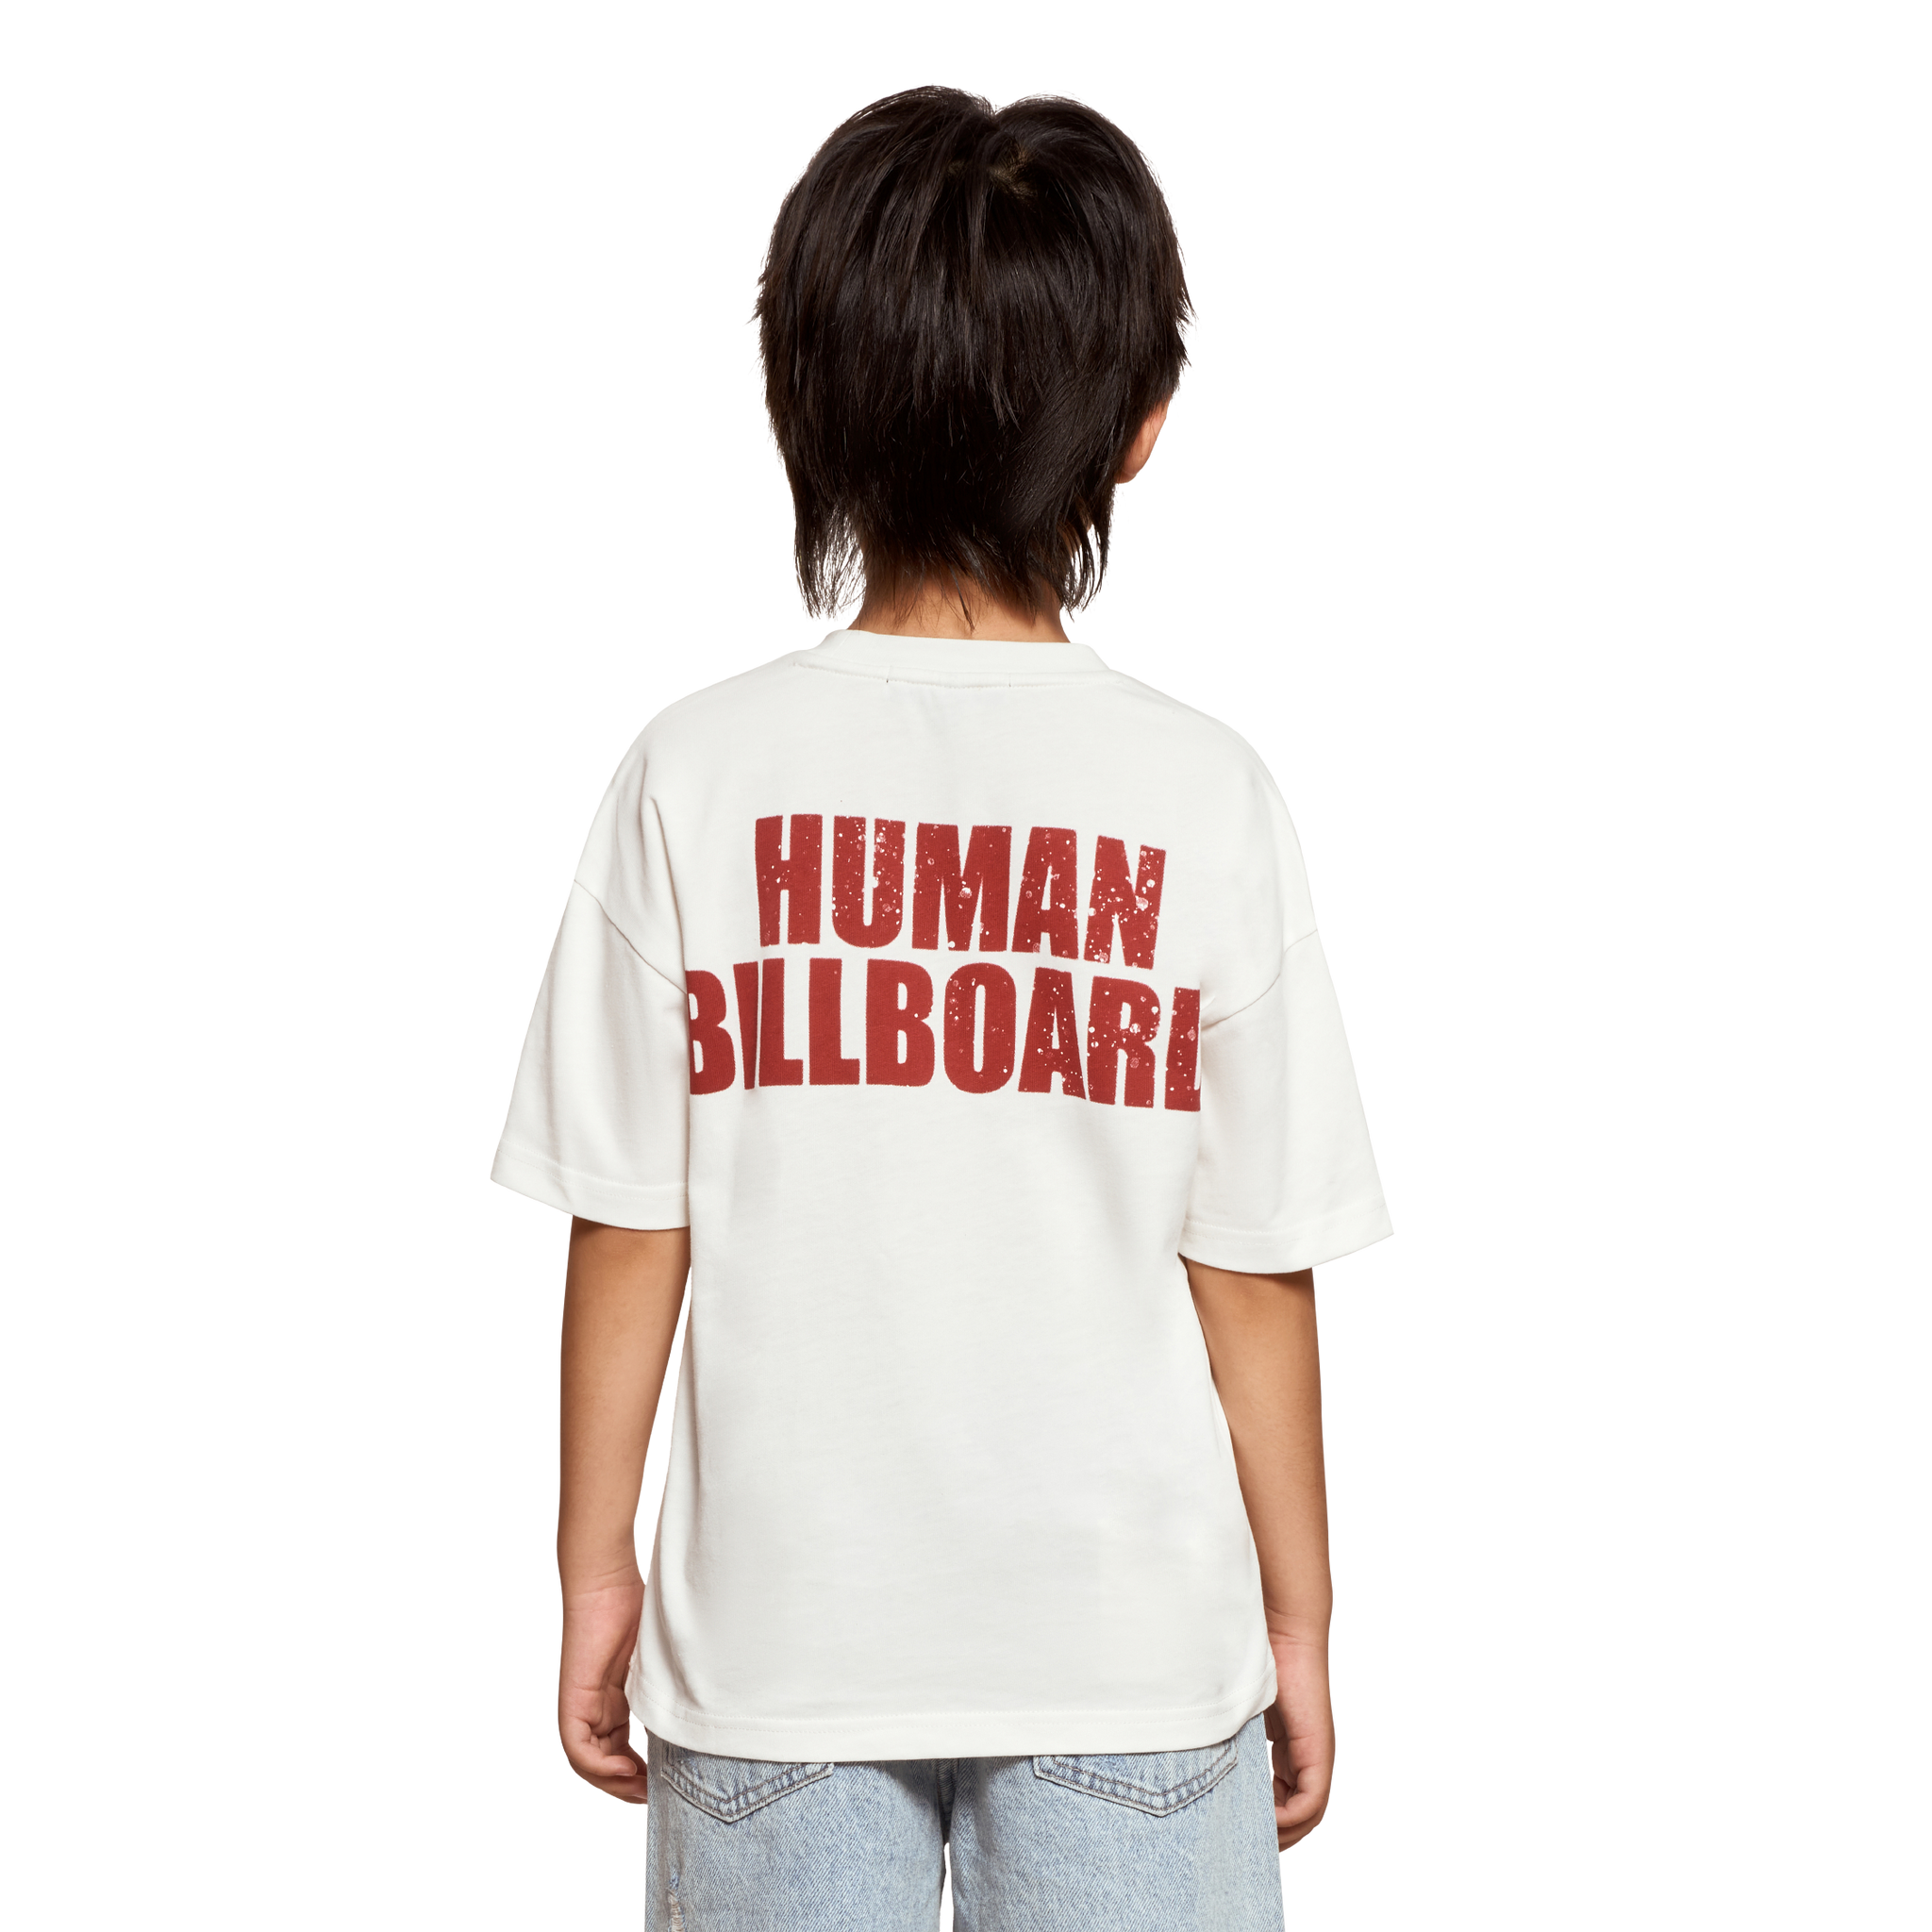 تيشيرت أطفال بشعار HUMMAN BILLBOARD - أبيض